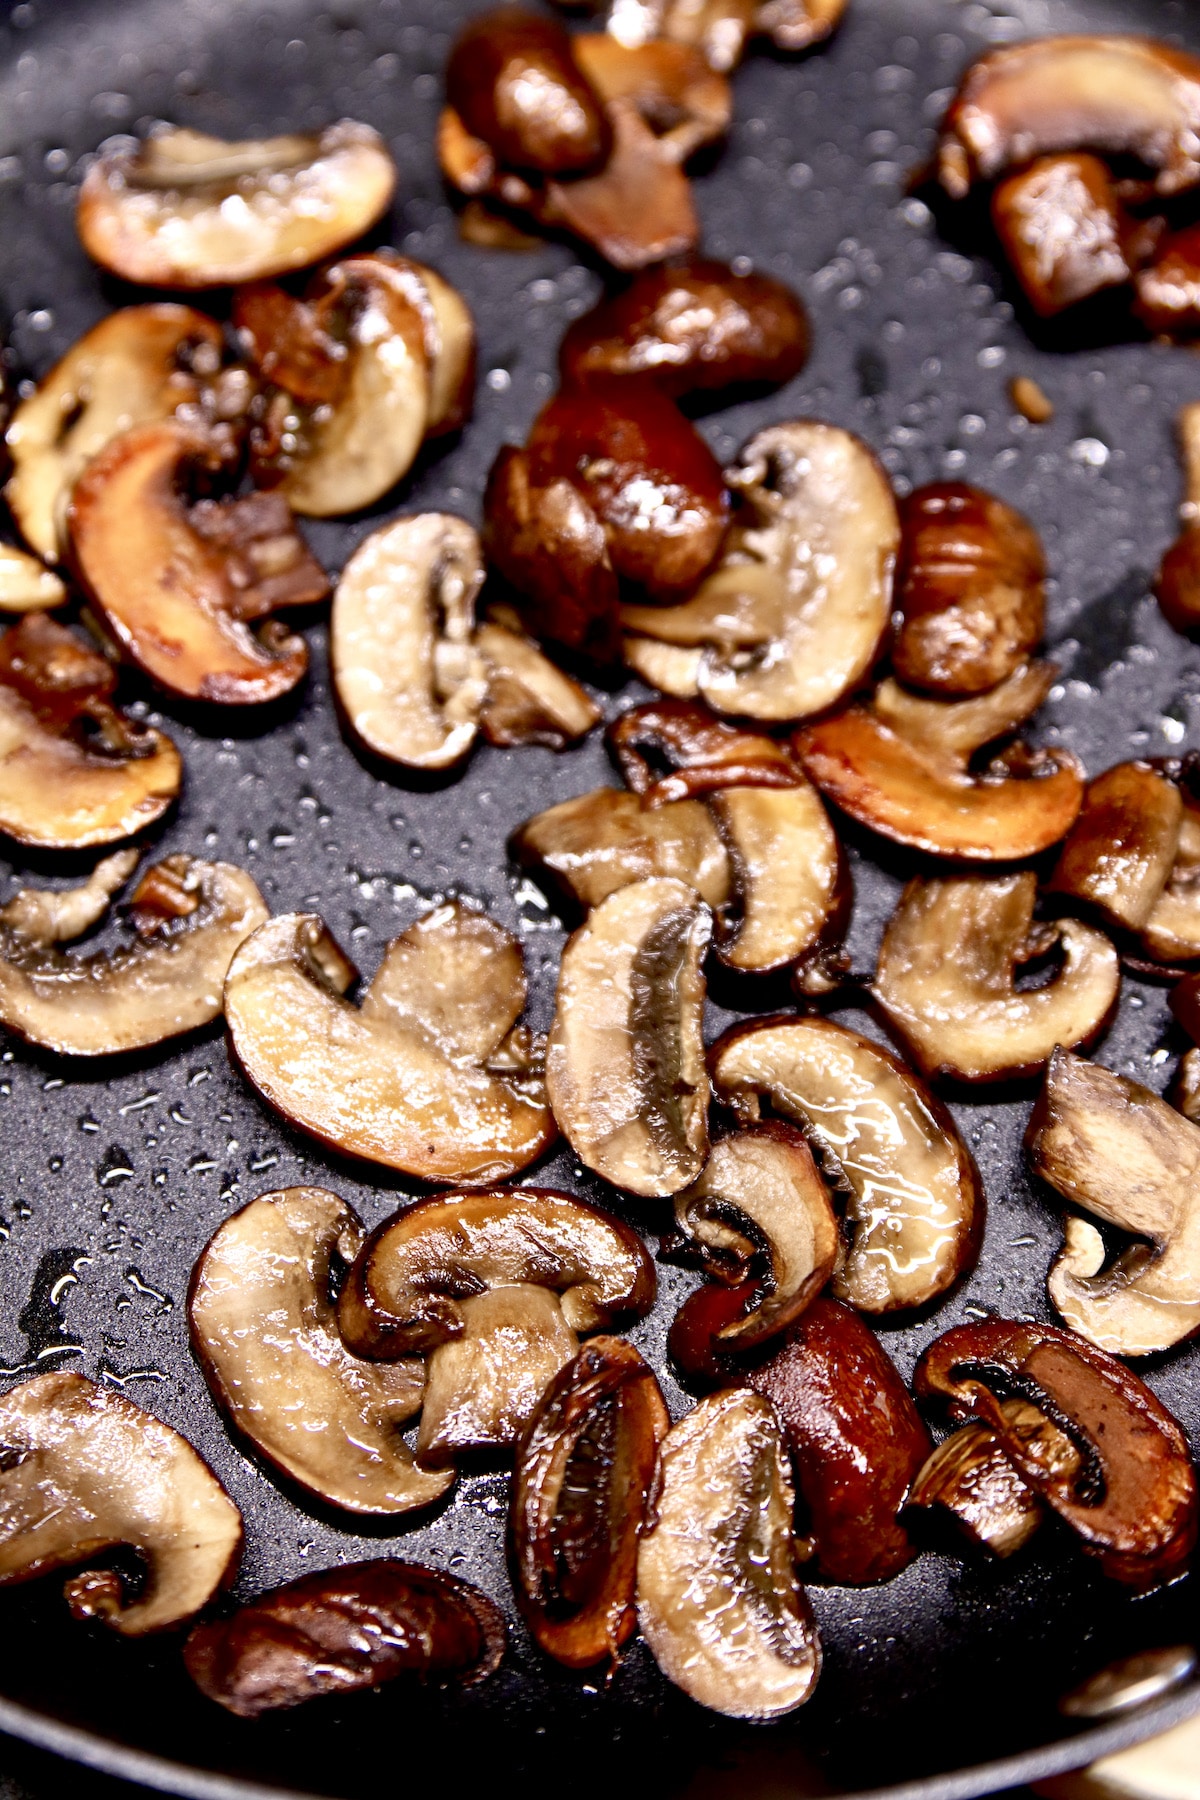 Sauteed sliced mushrooms.